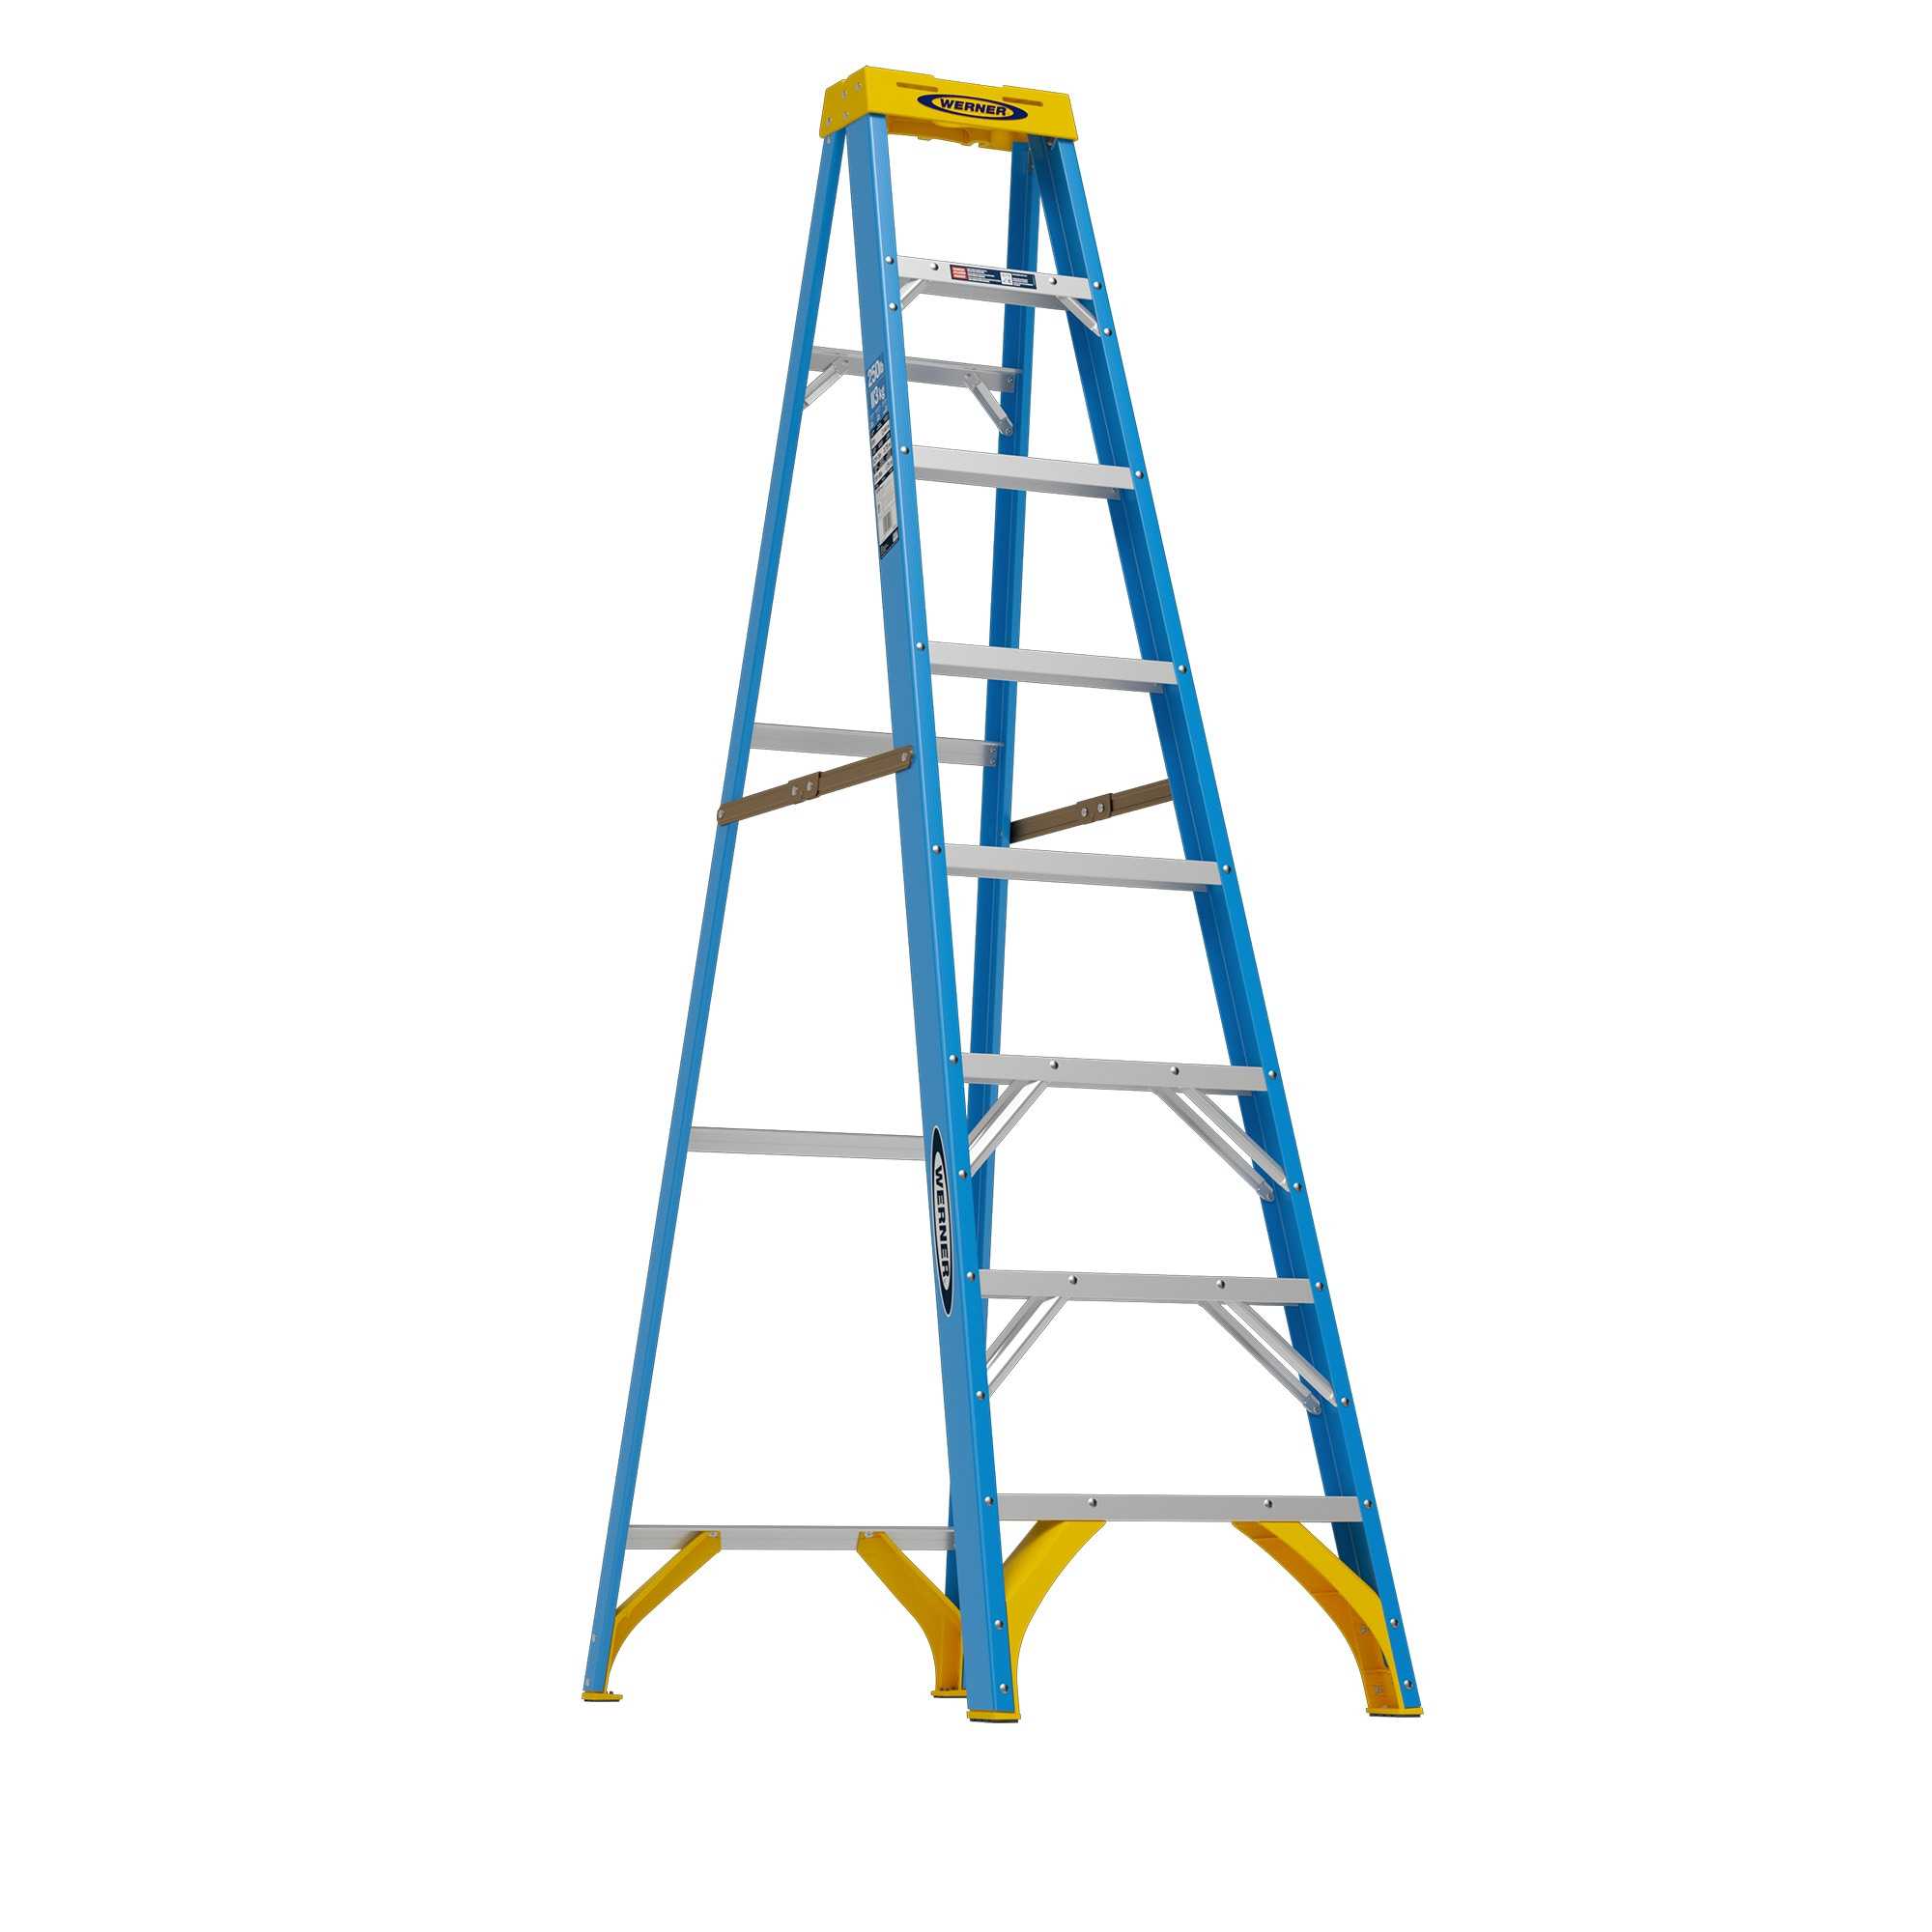 Werner FS100 8-ft Fiberglass Type 1-250-lb Load Capacity Step Ladder in Blue | FS108